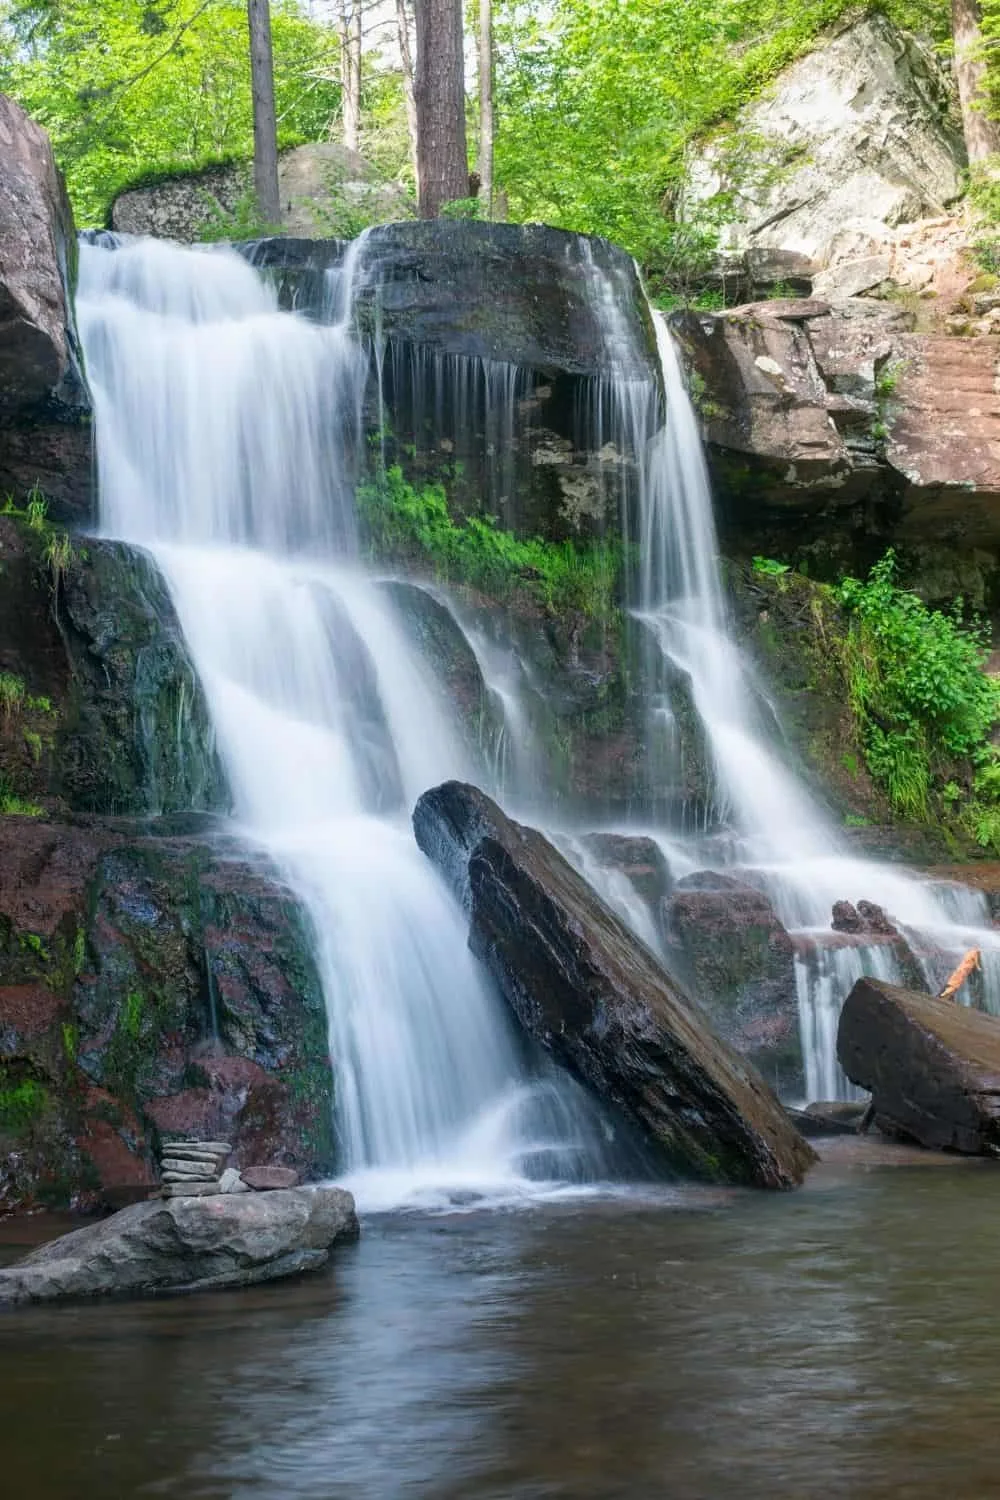 Beautiful Kaaterskills Falls in the Catskills. 